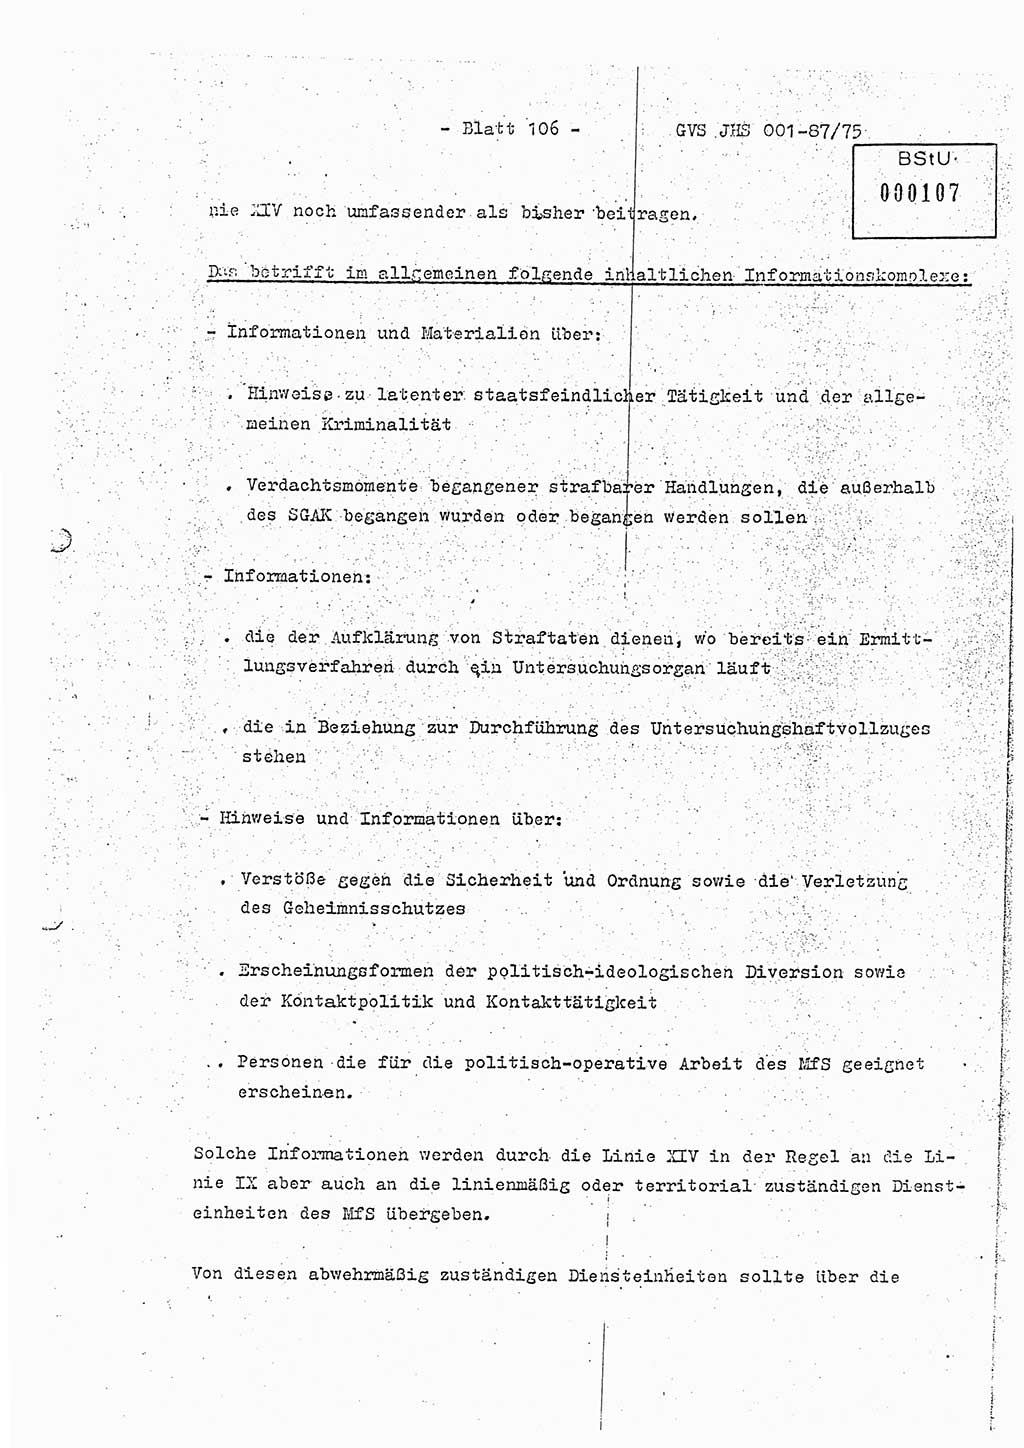 Diplomarbeit Hauptmann Volkmar Heinz (Abt. ⅩⅣ), Oberleutnant Lothar Rüdiger (BV Lpz. Abt. Ⅺ), Ministerium für Staatssicherheit (MfS) [Deutsche Demokratische Republik (DDR)], Juristische Hochschule (JHS), Geheime Verschlußsache (GVS) o001-87/75, Potsdam 1975, Seite 106 (Dipl.-Arb. MfS DDR JHS GVS o001-87/75 1975, S. 106)